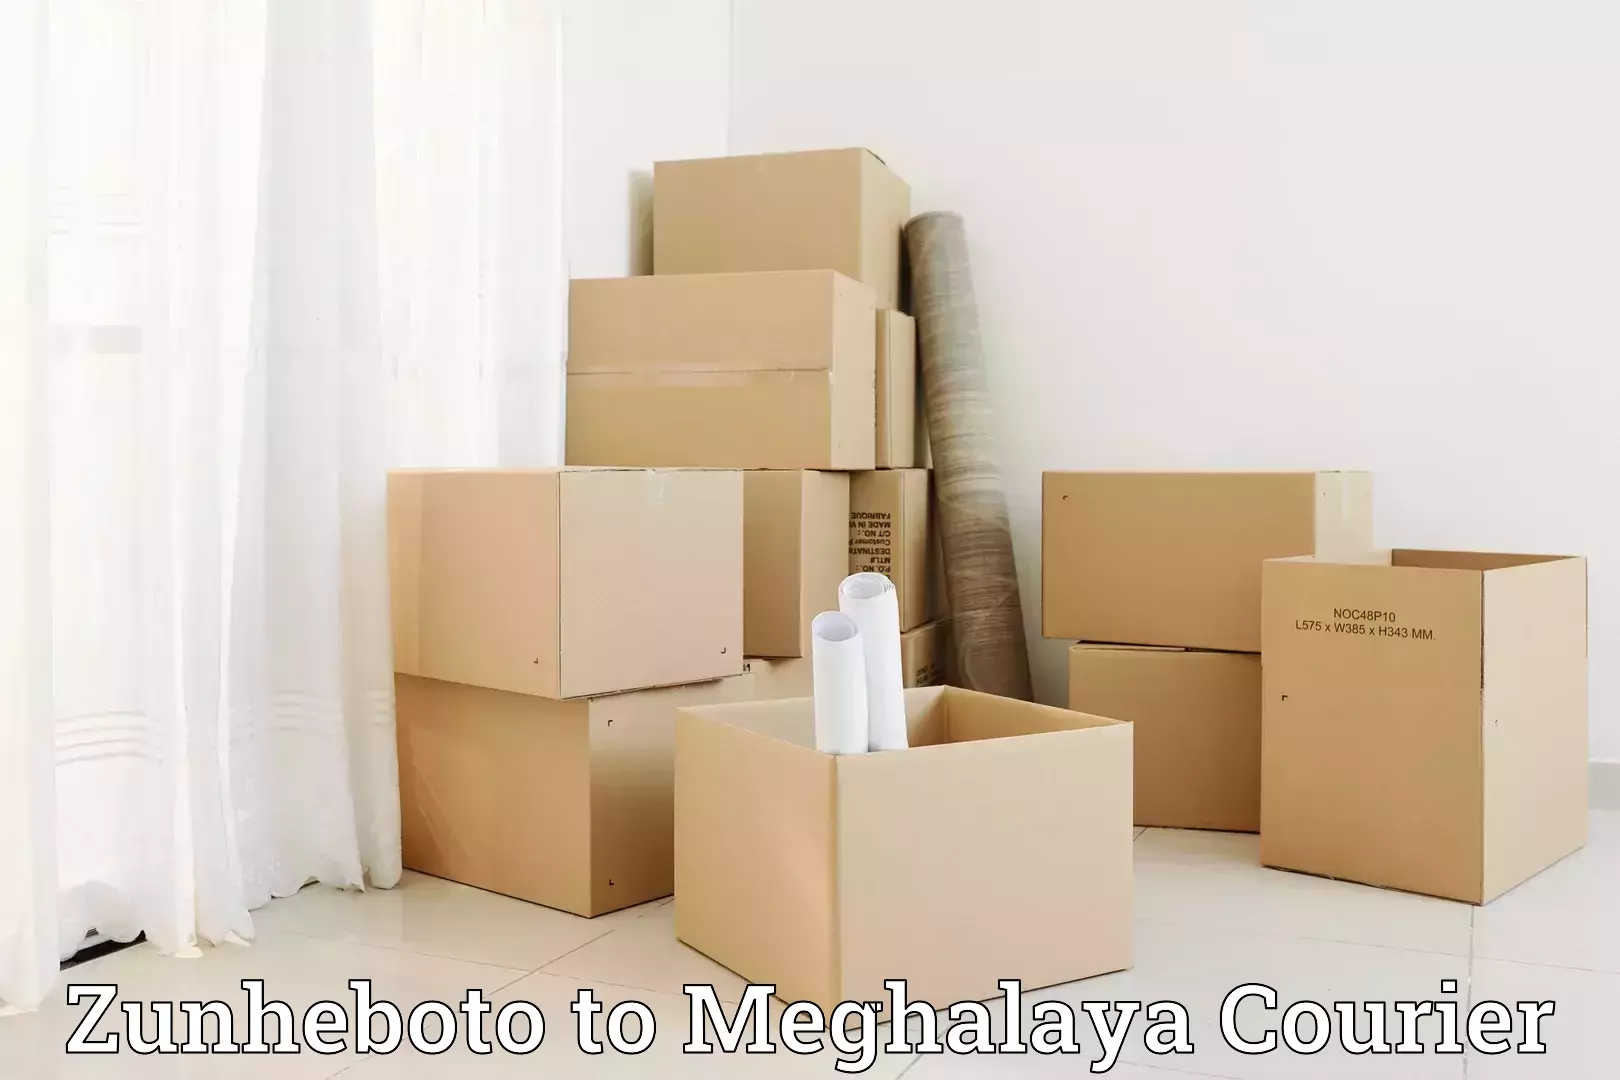 Furniture moving experts Zunheboto to Meghalaya